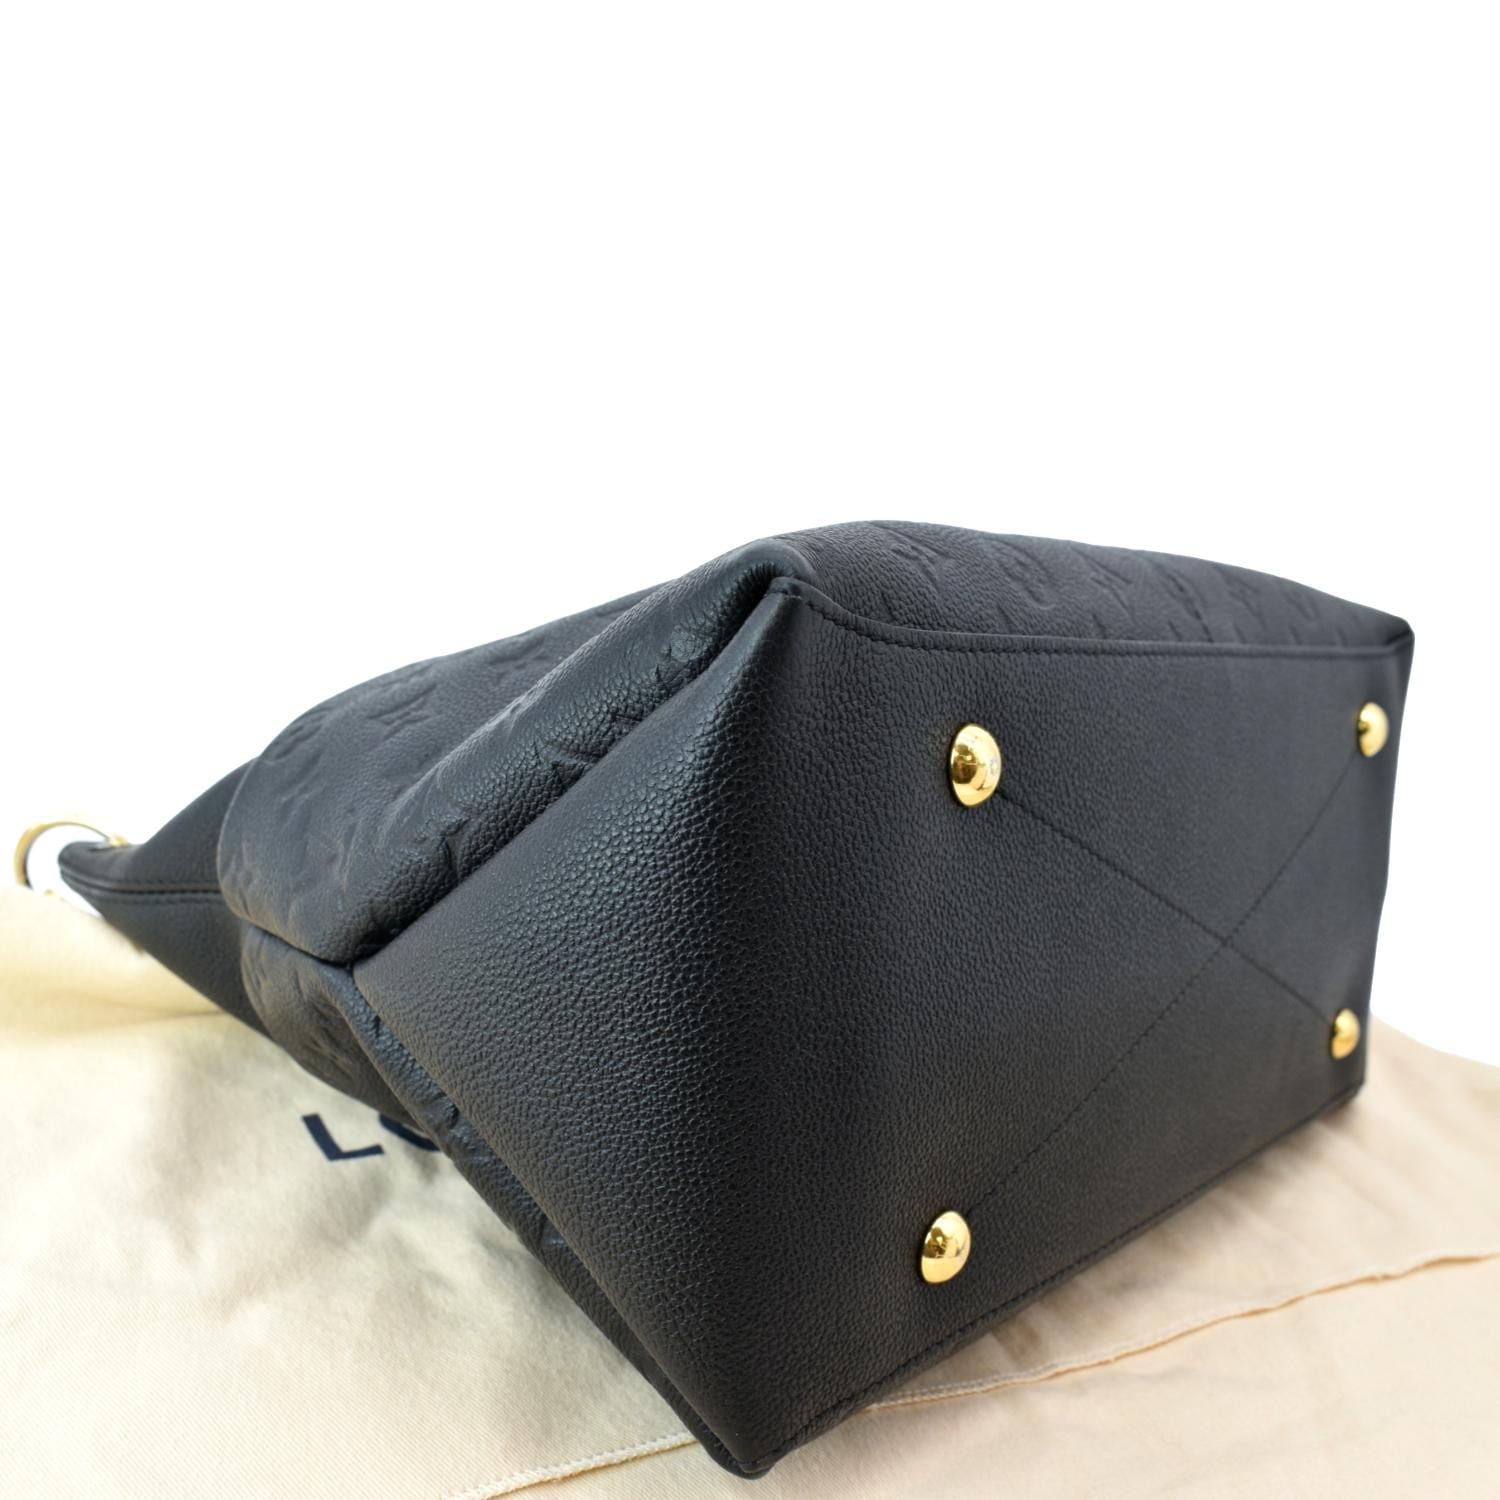 MAIDA HOBO BAG IN BLACK  Bags designer fashion, Bags, Fashion handbags